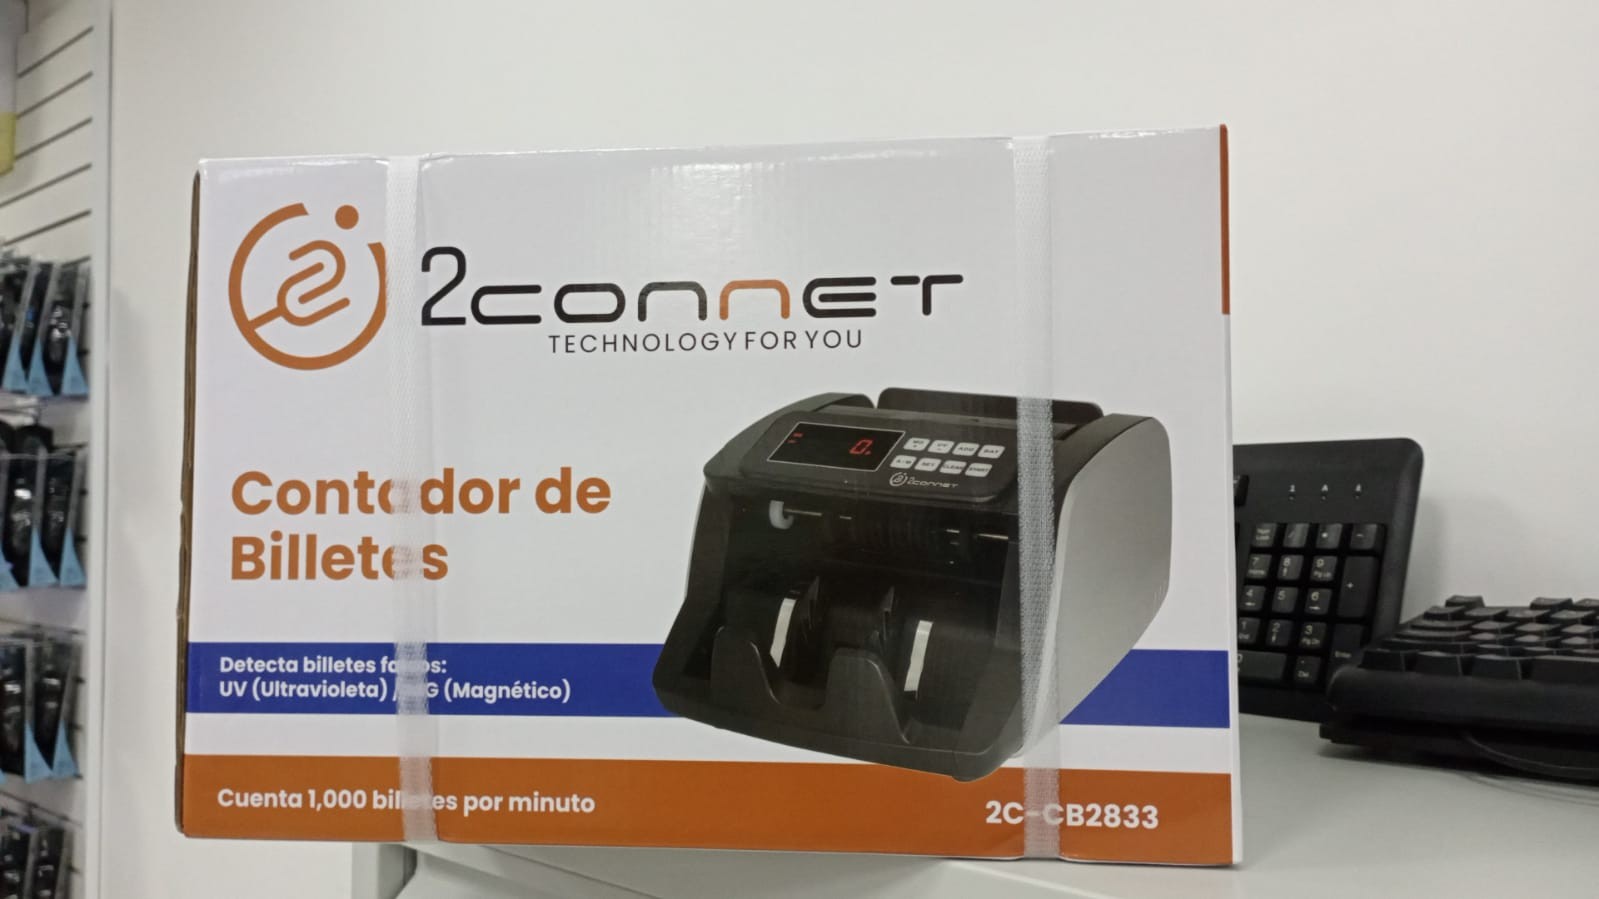 impresoras y scanners - Contadora de Dinero/Billetes Mod. 2C-CD2833